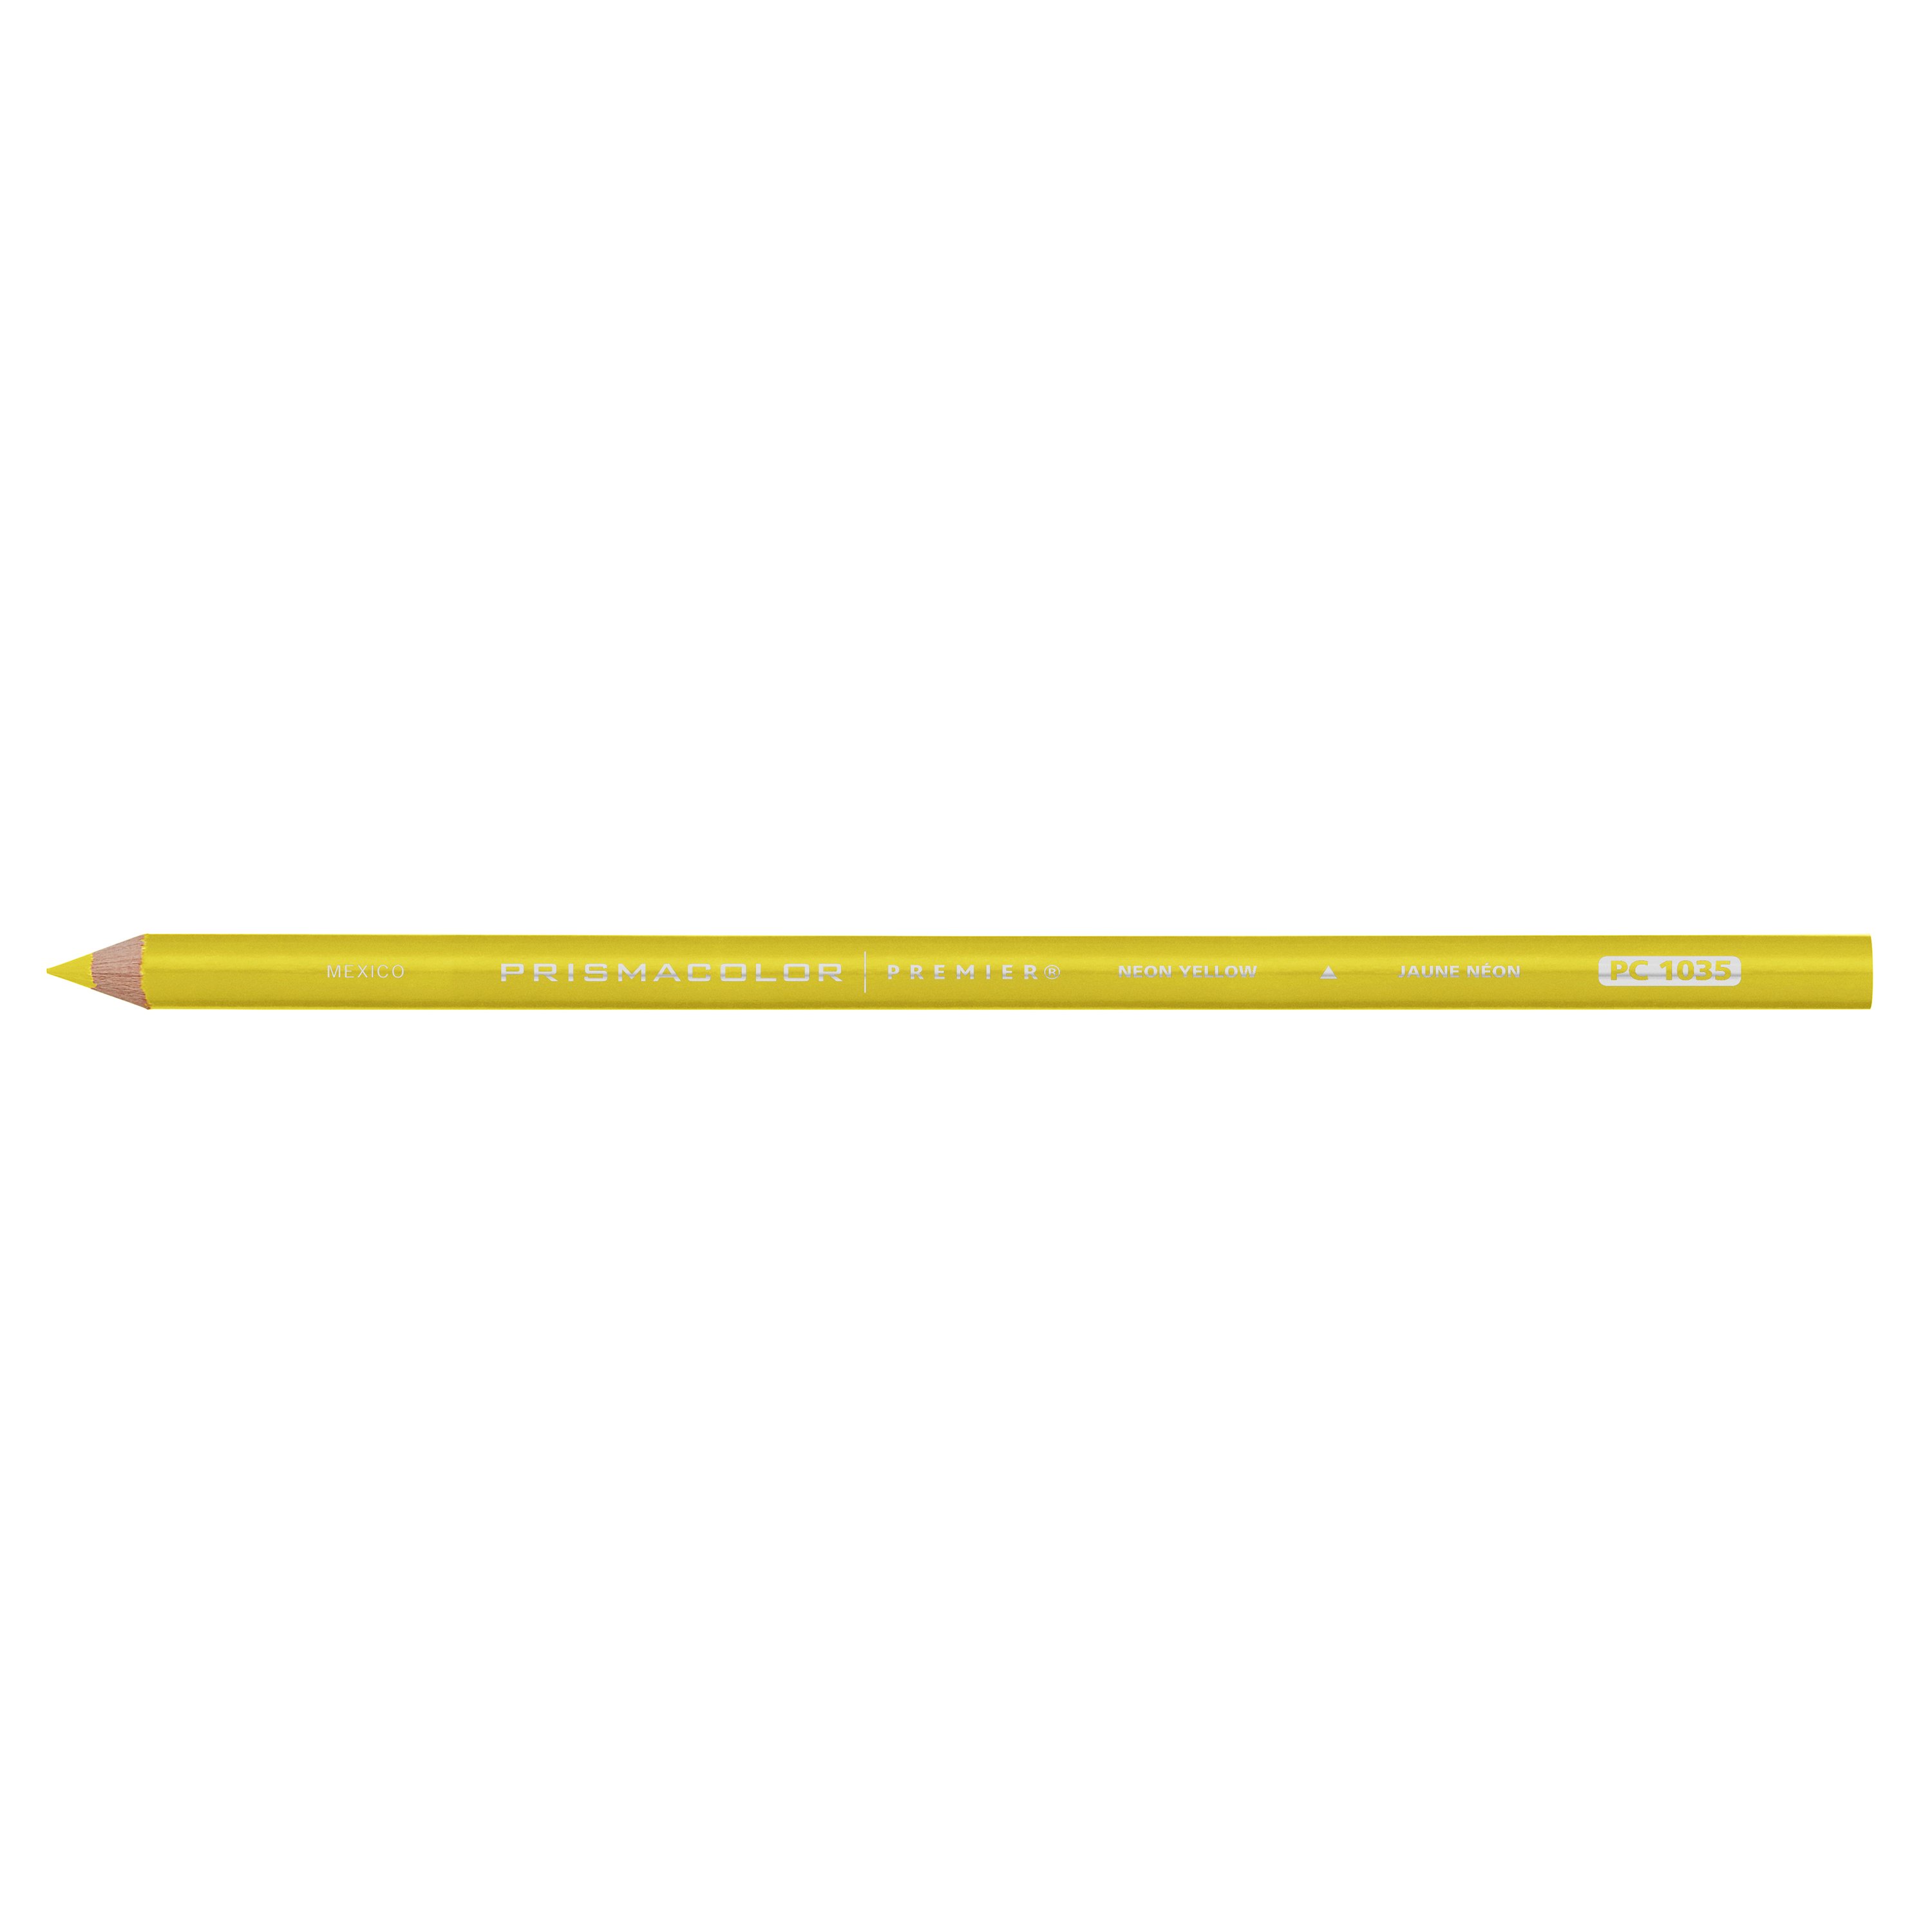 Prismacolor Premier Soft Core Colored Pencil - White